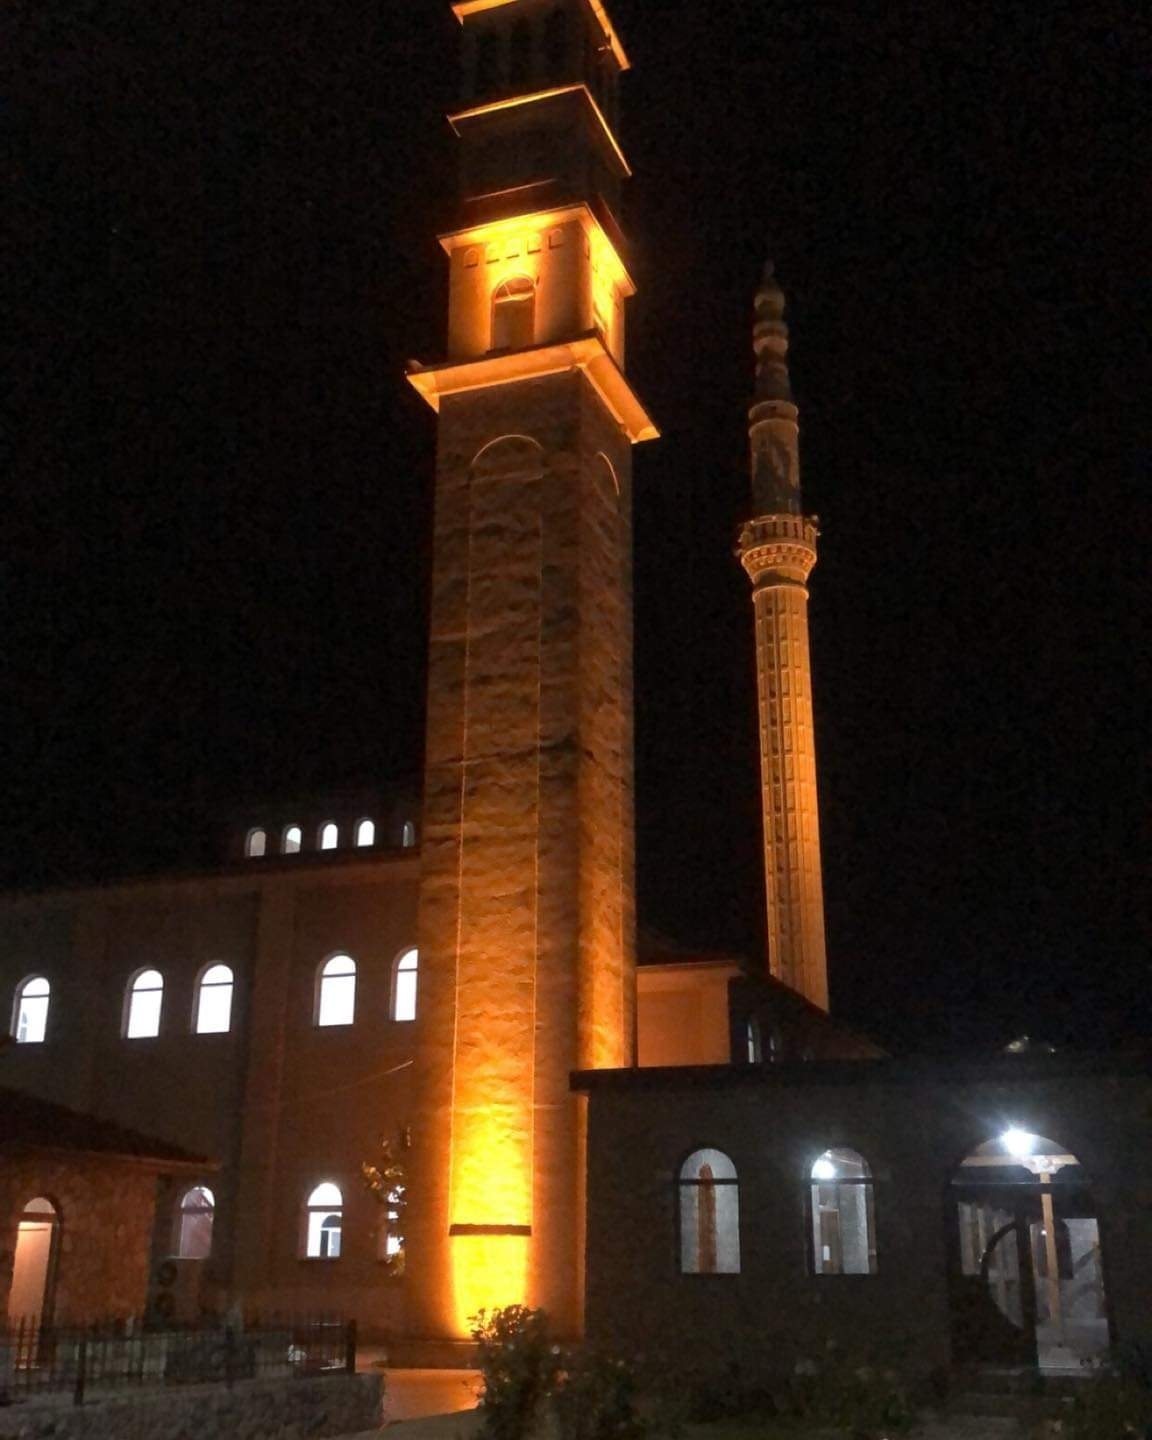 Donacion për xhaminë e Sahat Kullës në Dibër të Madhe